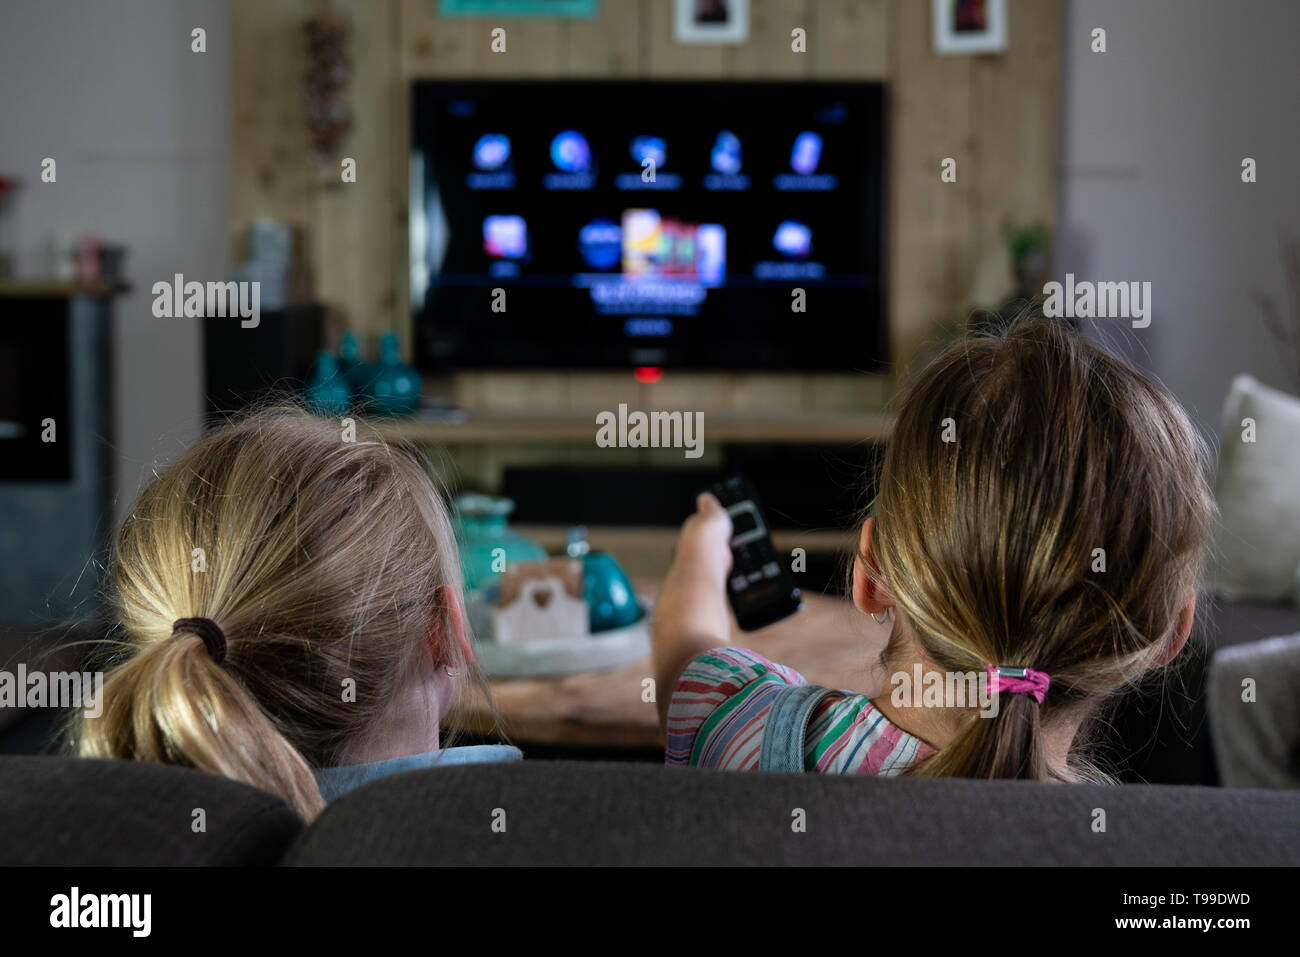 Vista posteriore dei due bambini di scorrimento attraverso le app su una smart tv. indietro dei bambini con il focus sul telecomando. Il futurismo quotidiana Foto Stock